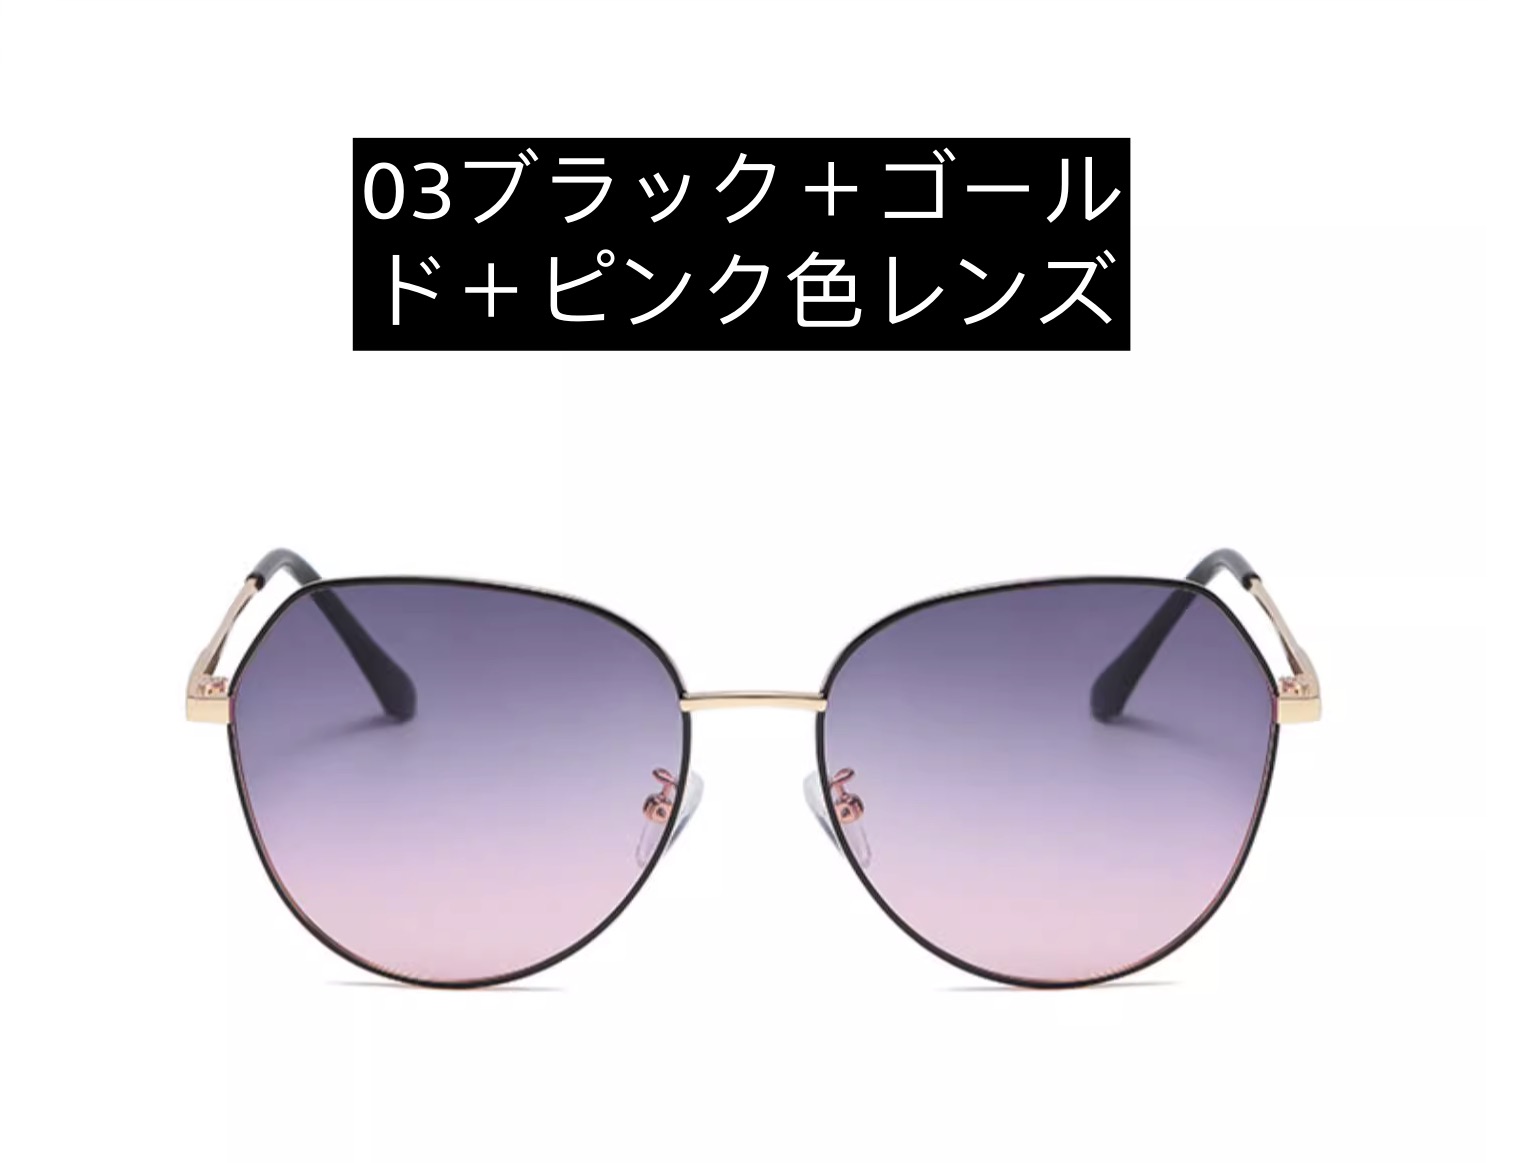 夏UVカットメンズ ブランド メガネ大きいフレーム痩せ顔効果紫外線カット